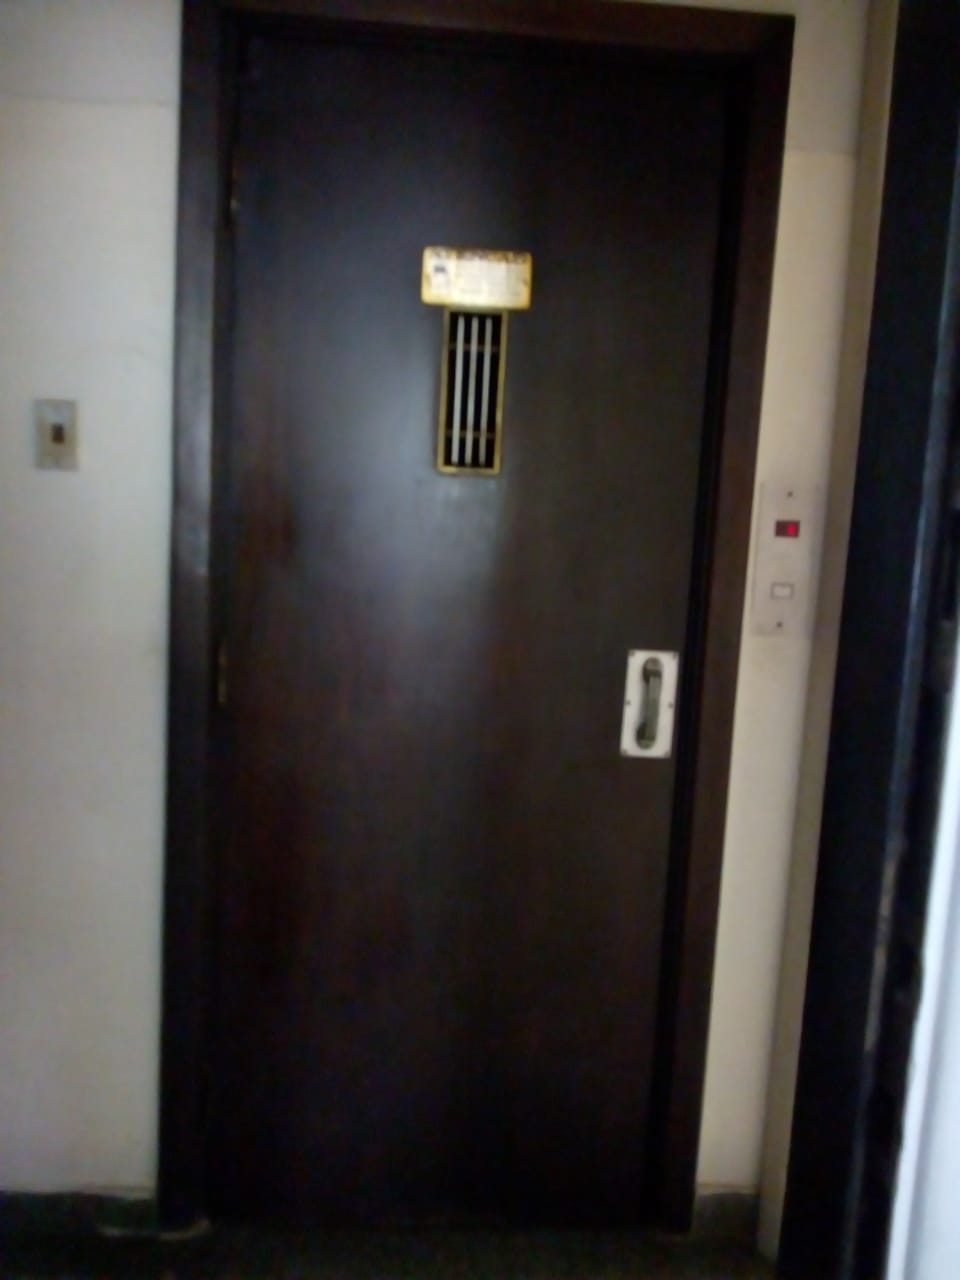 o elevador socia, enfrente à porta do apartamento